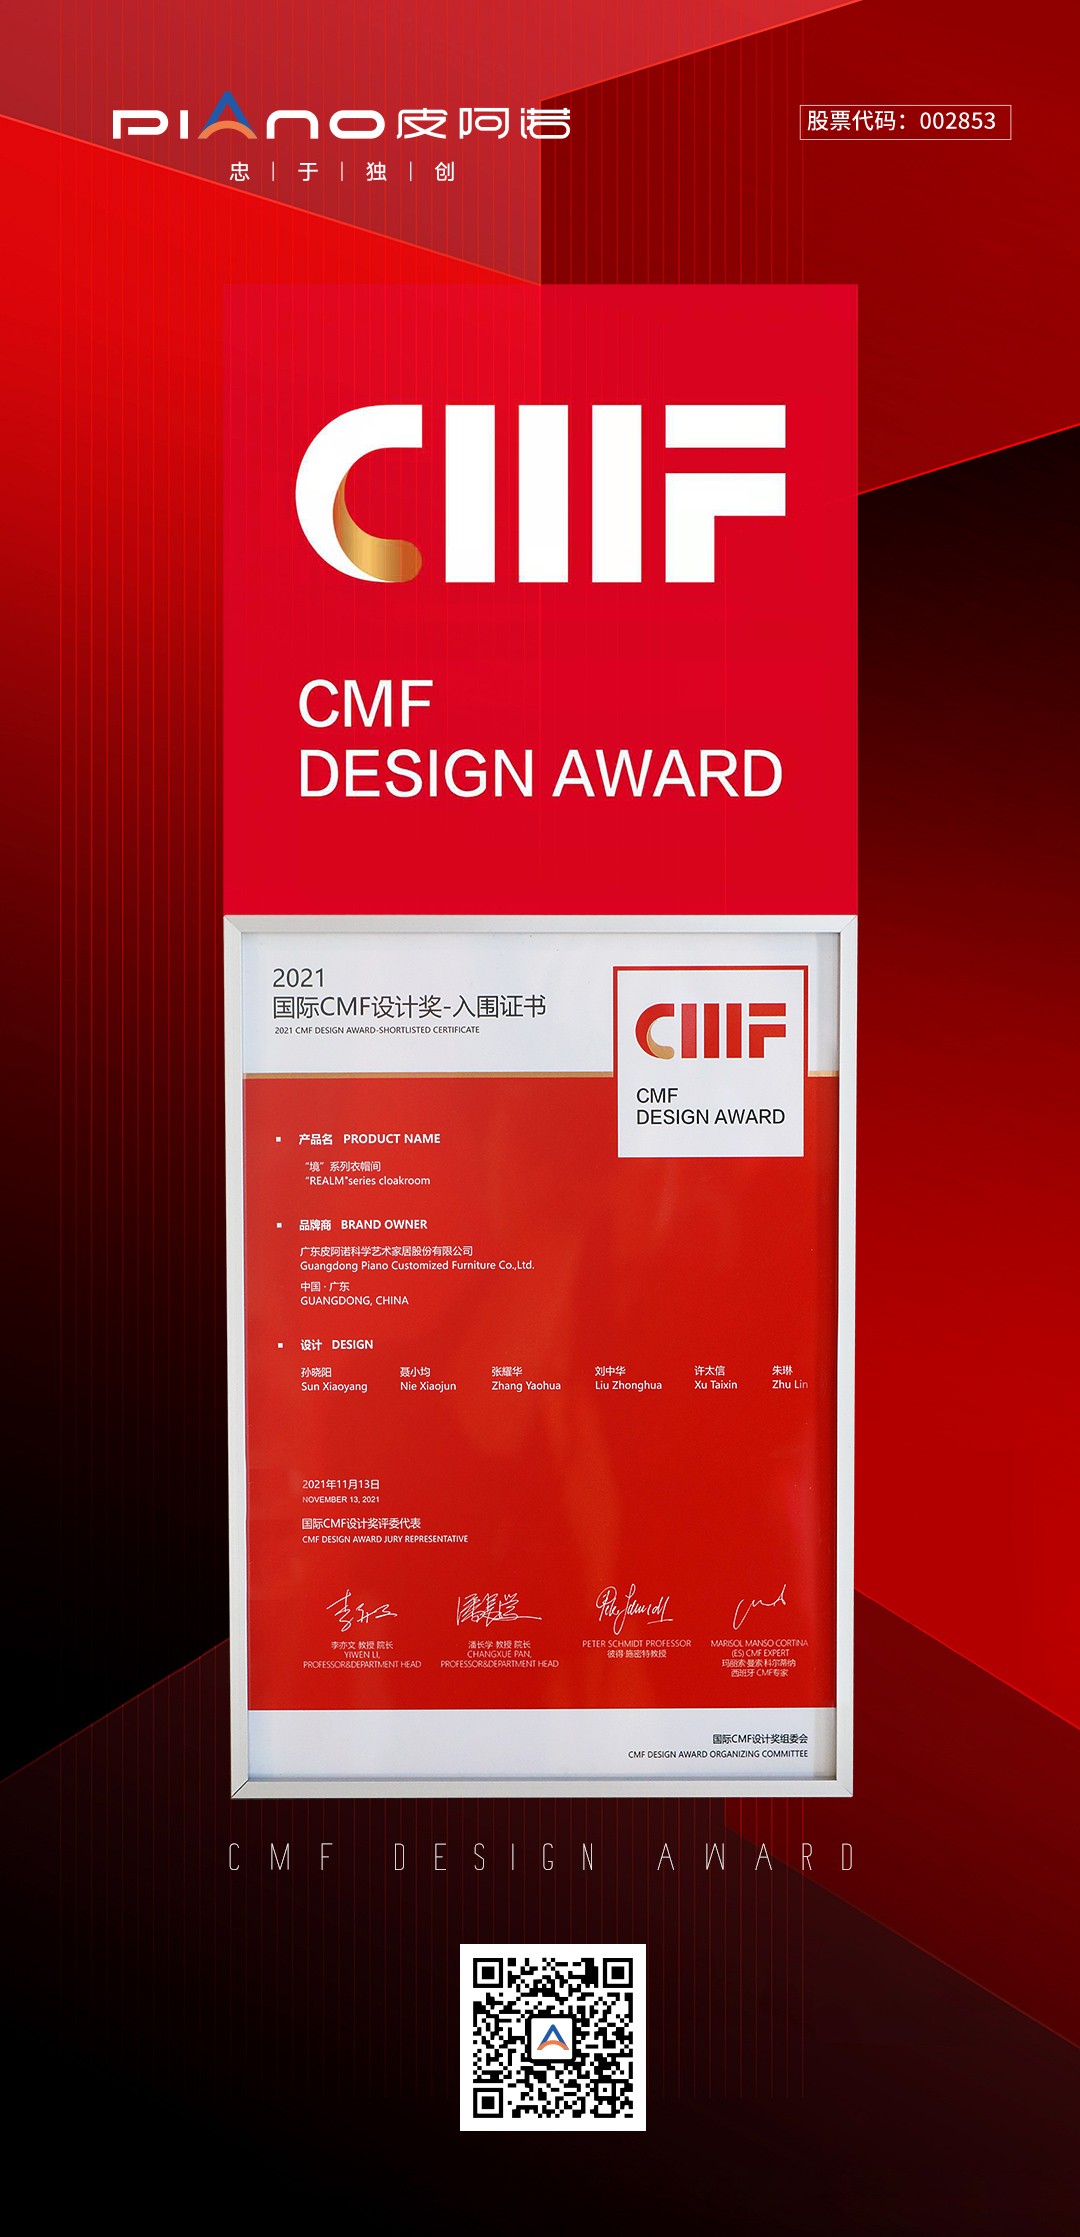 以卓越设计 为更高品质加码丨皮阿诺大师系列衣柜产品入围国际CMF设计奖